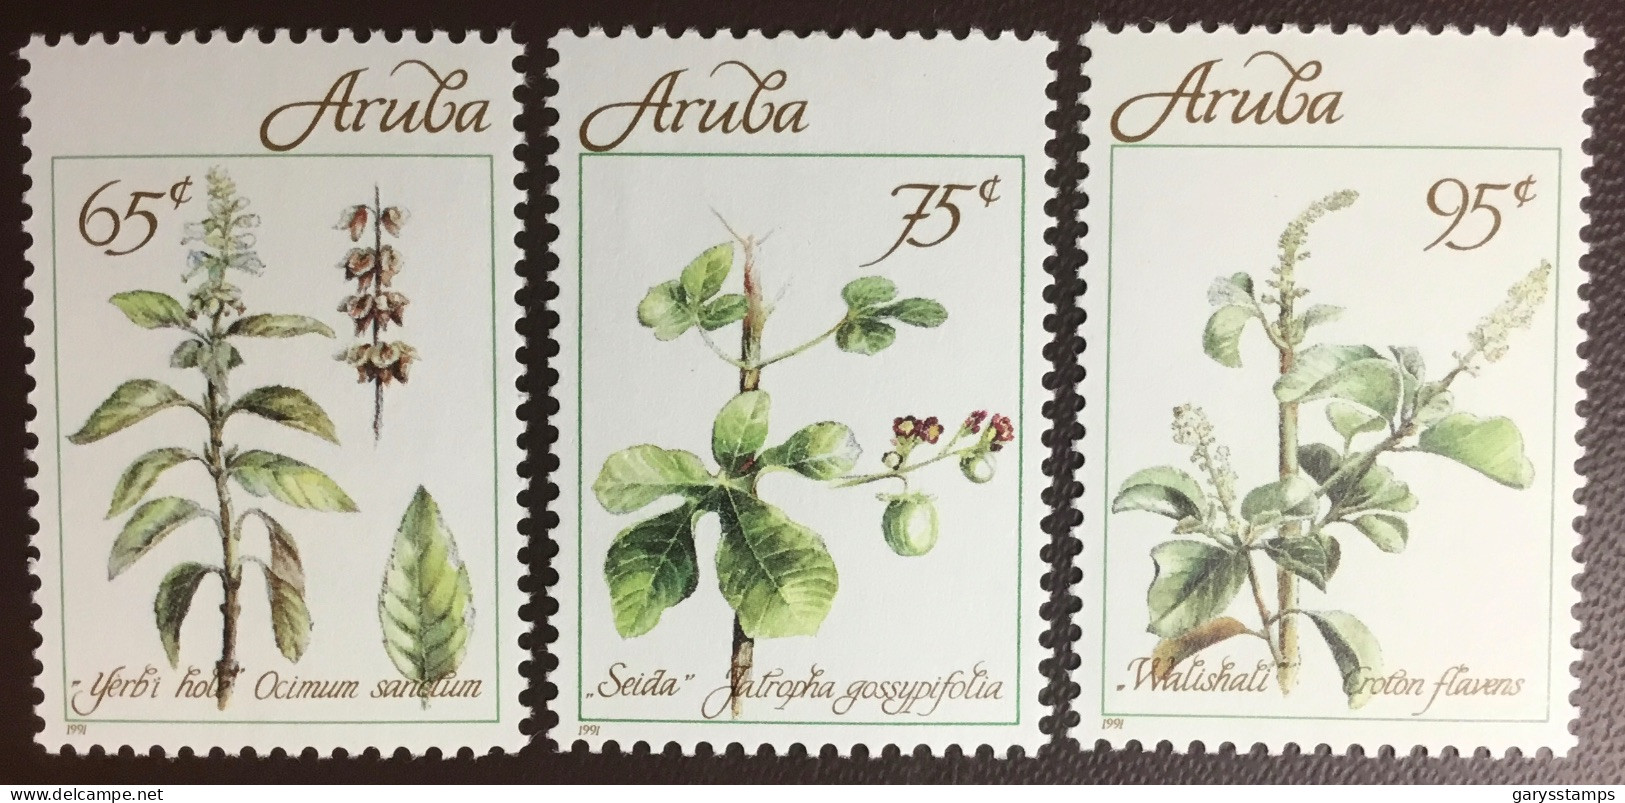 Aruba 1991 Medicinal Plants MNH - Heilpflanzen